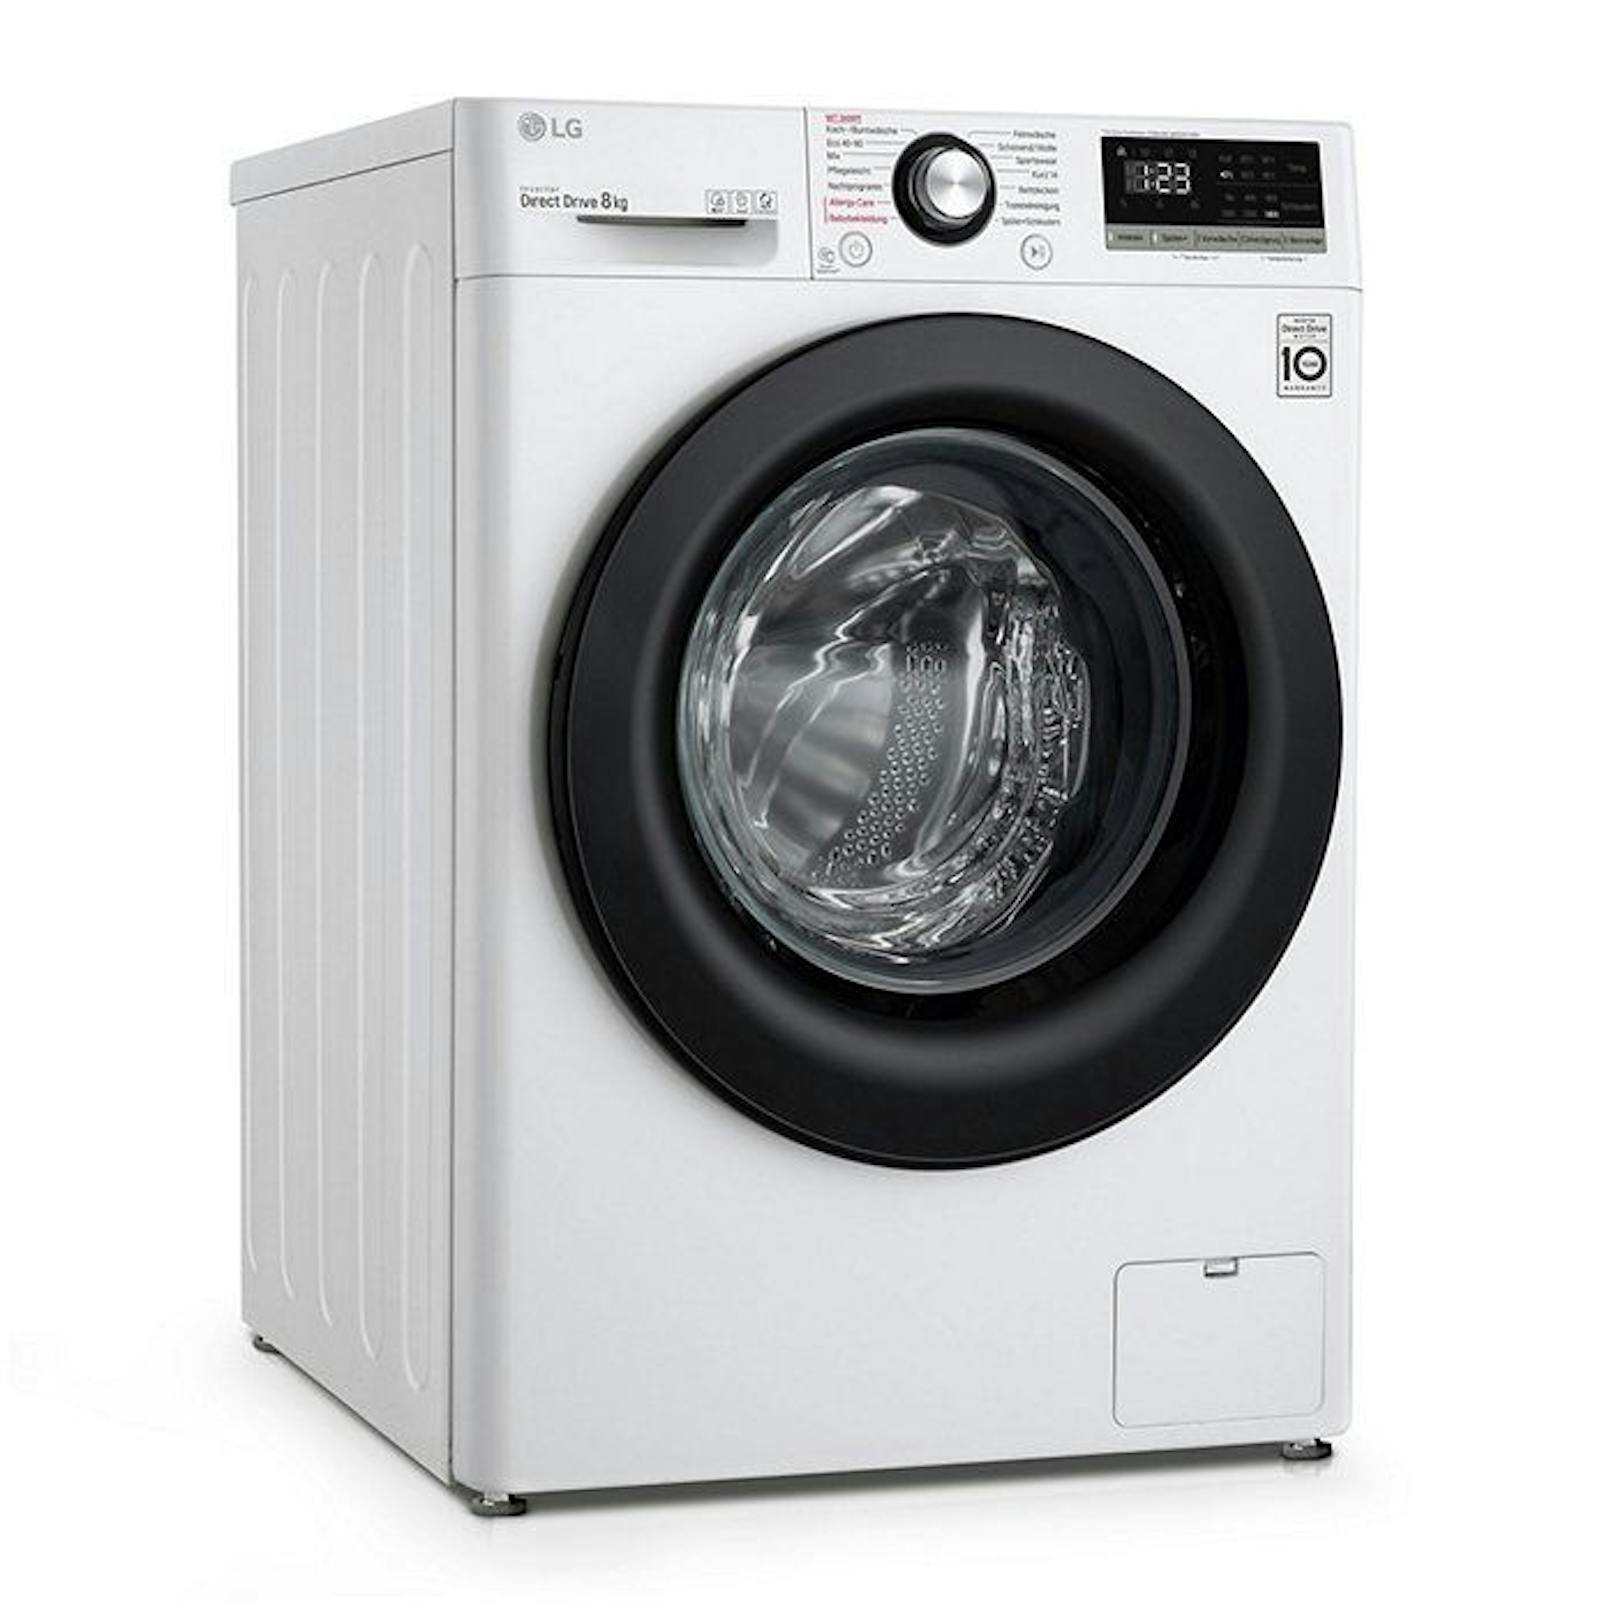 Jetzt bei Hofer im Angebot: die LG Waschmaschine F4WV308SB.